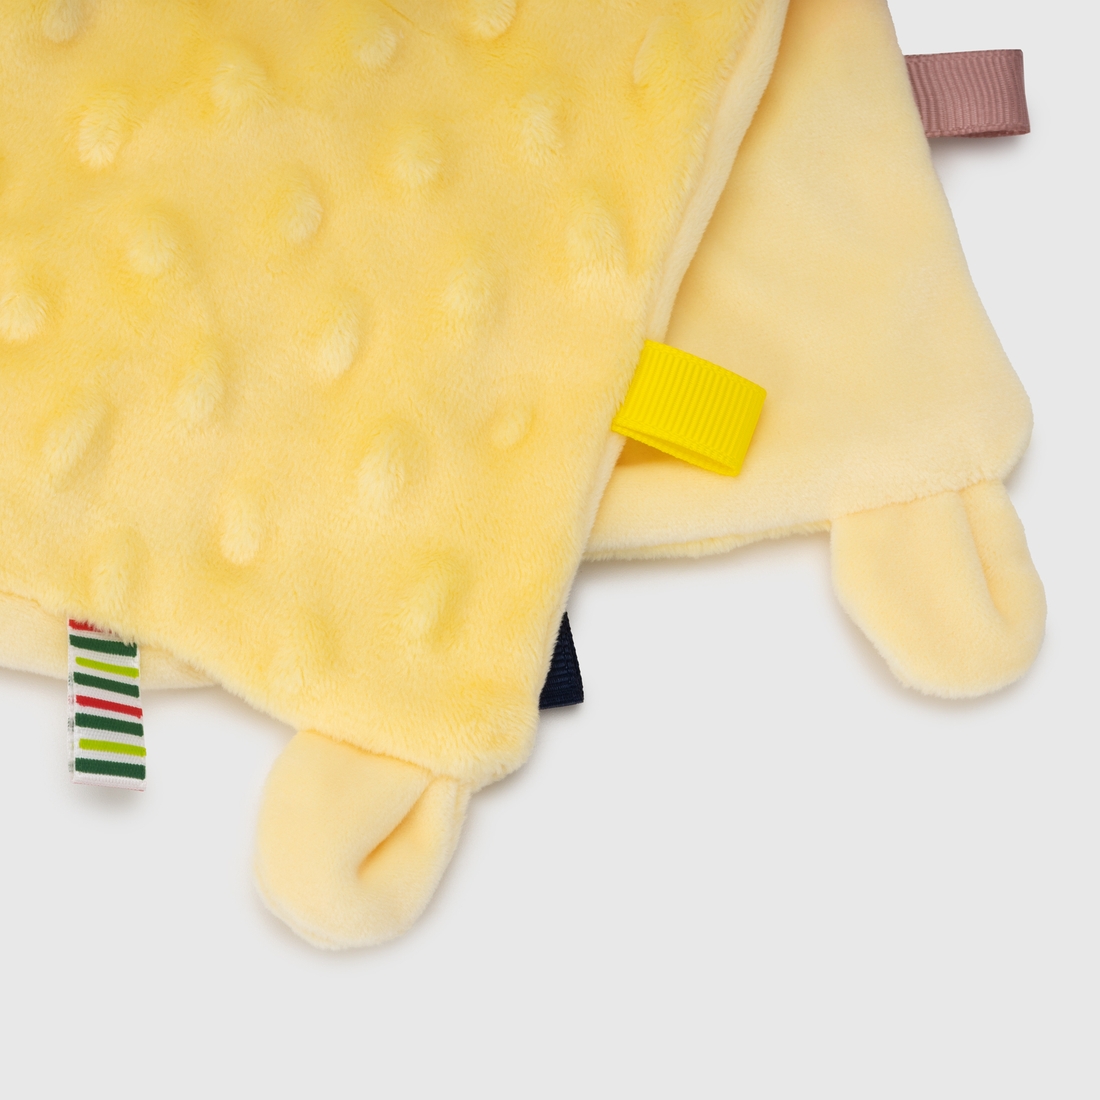 Фото Погремушка Цыпа QM2358-1 мягкое полотенце с прорезывателем Разноцветный (2000989935872)